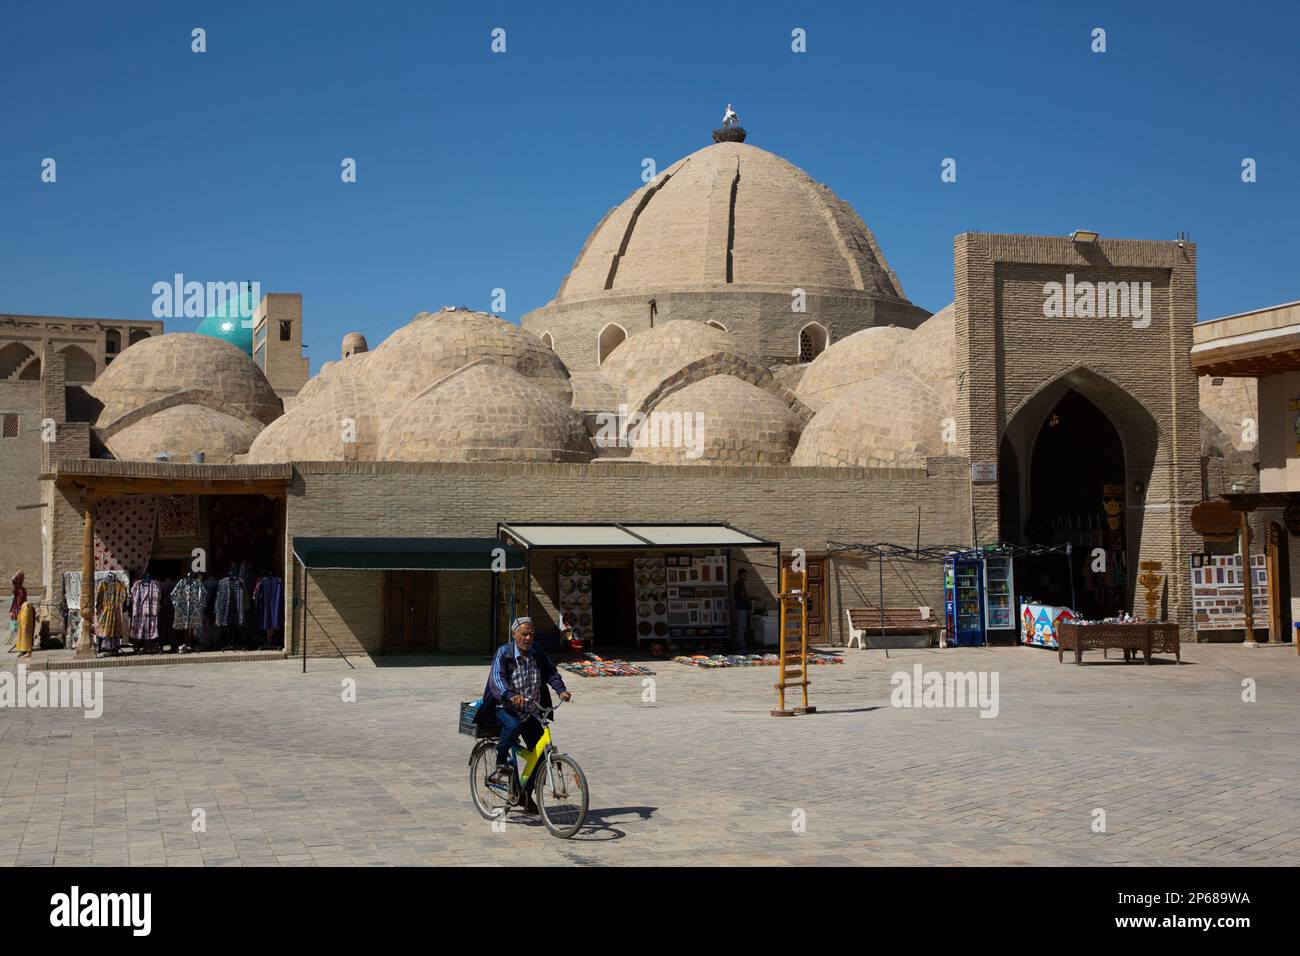 Toqi Zargaron (dôme commercial), site du patrimoine mondial de l'UNESCO, Boukhara, Ouzbékistan, Asie centrale, Asie Banque D'Images